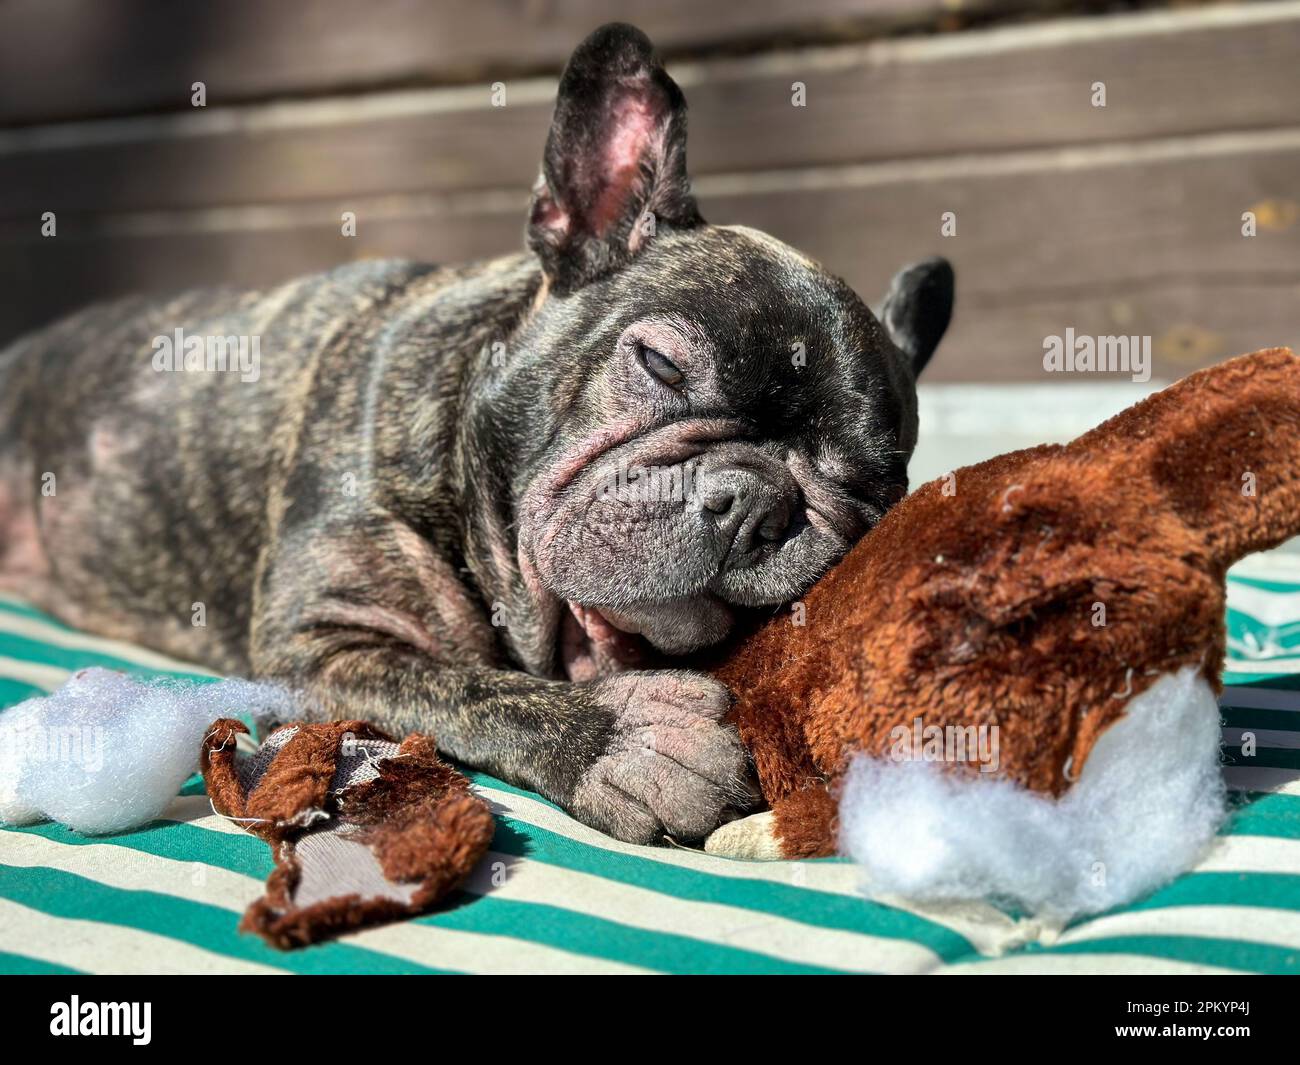 Dunkelbraune Bulldogge liegt auf einer grün gestreiften Decke und nagt an einem gefüllten Teddybär am Herd, wobei Watte herauskommt. Stockfoto